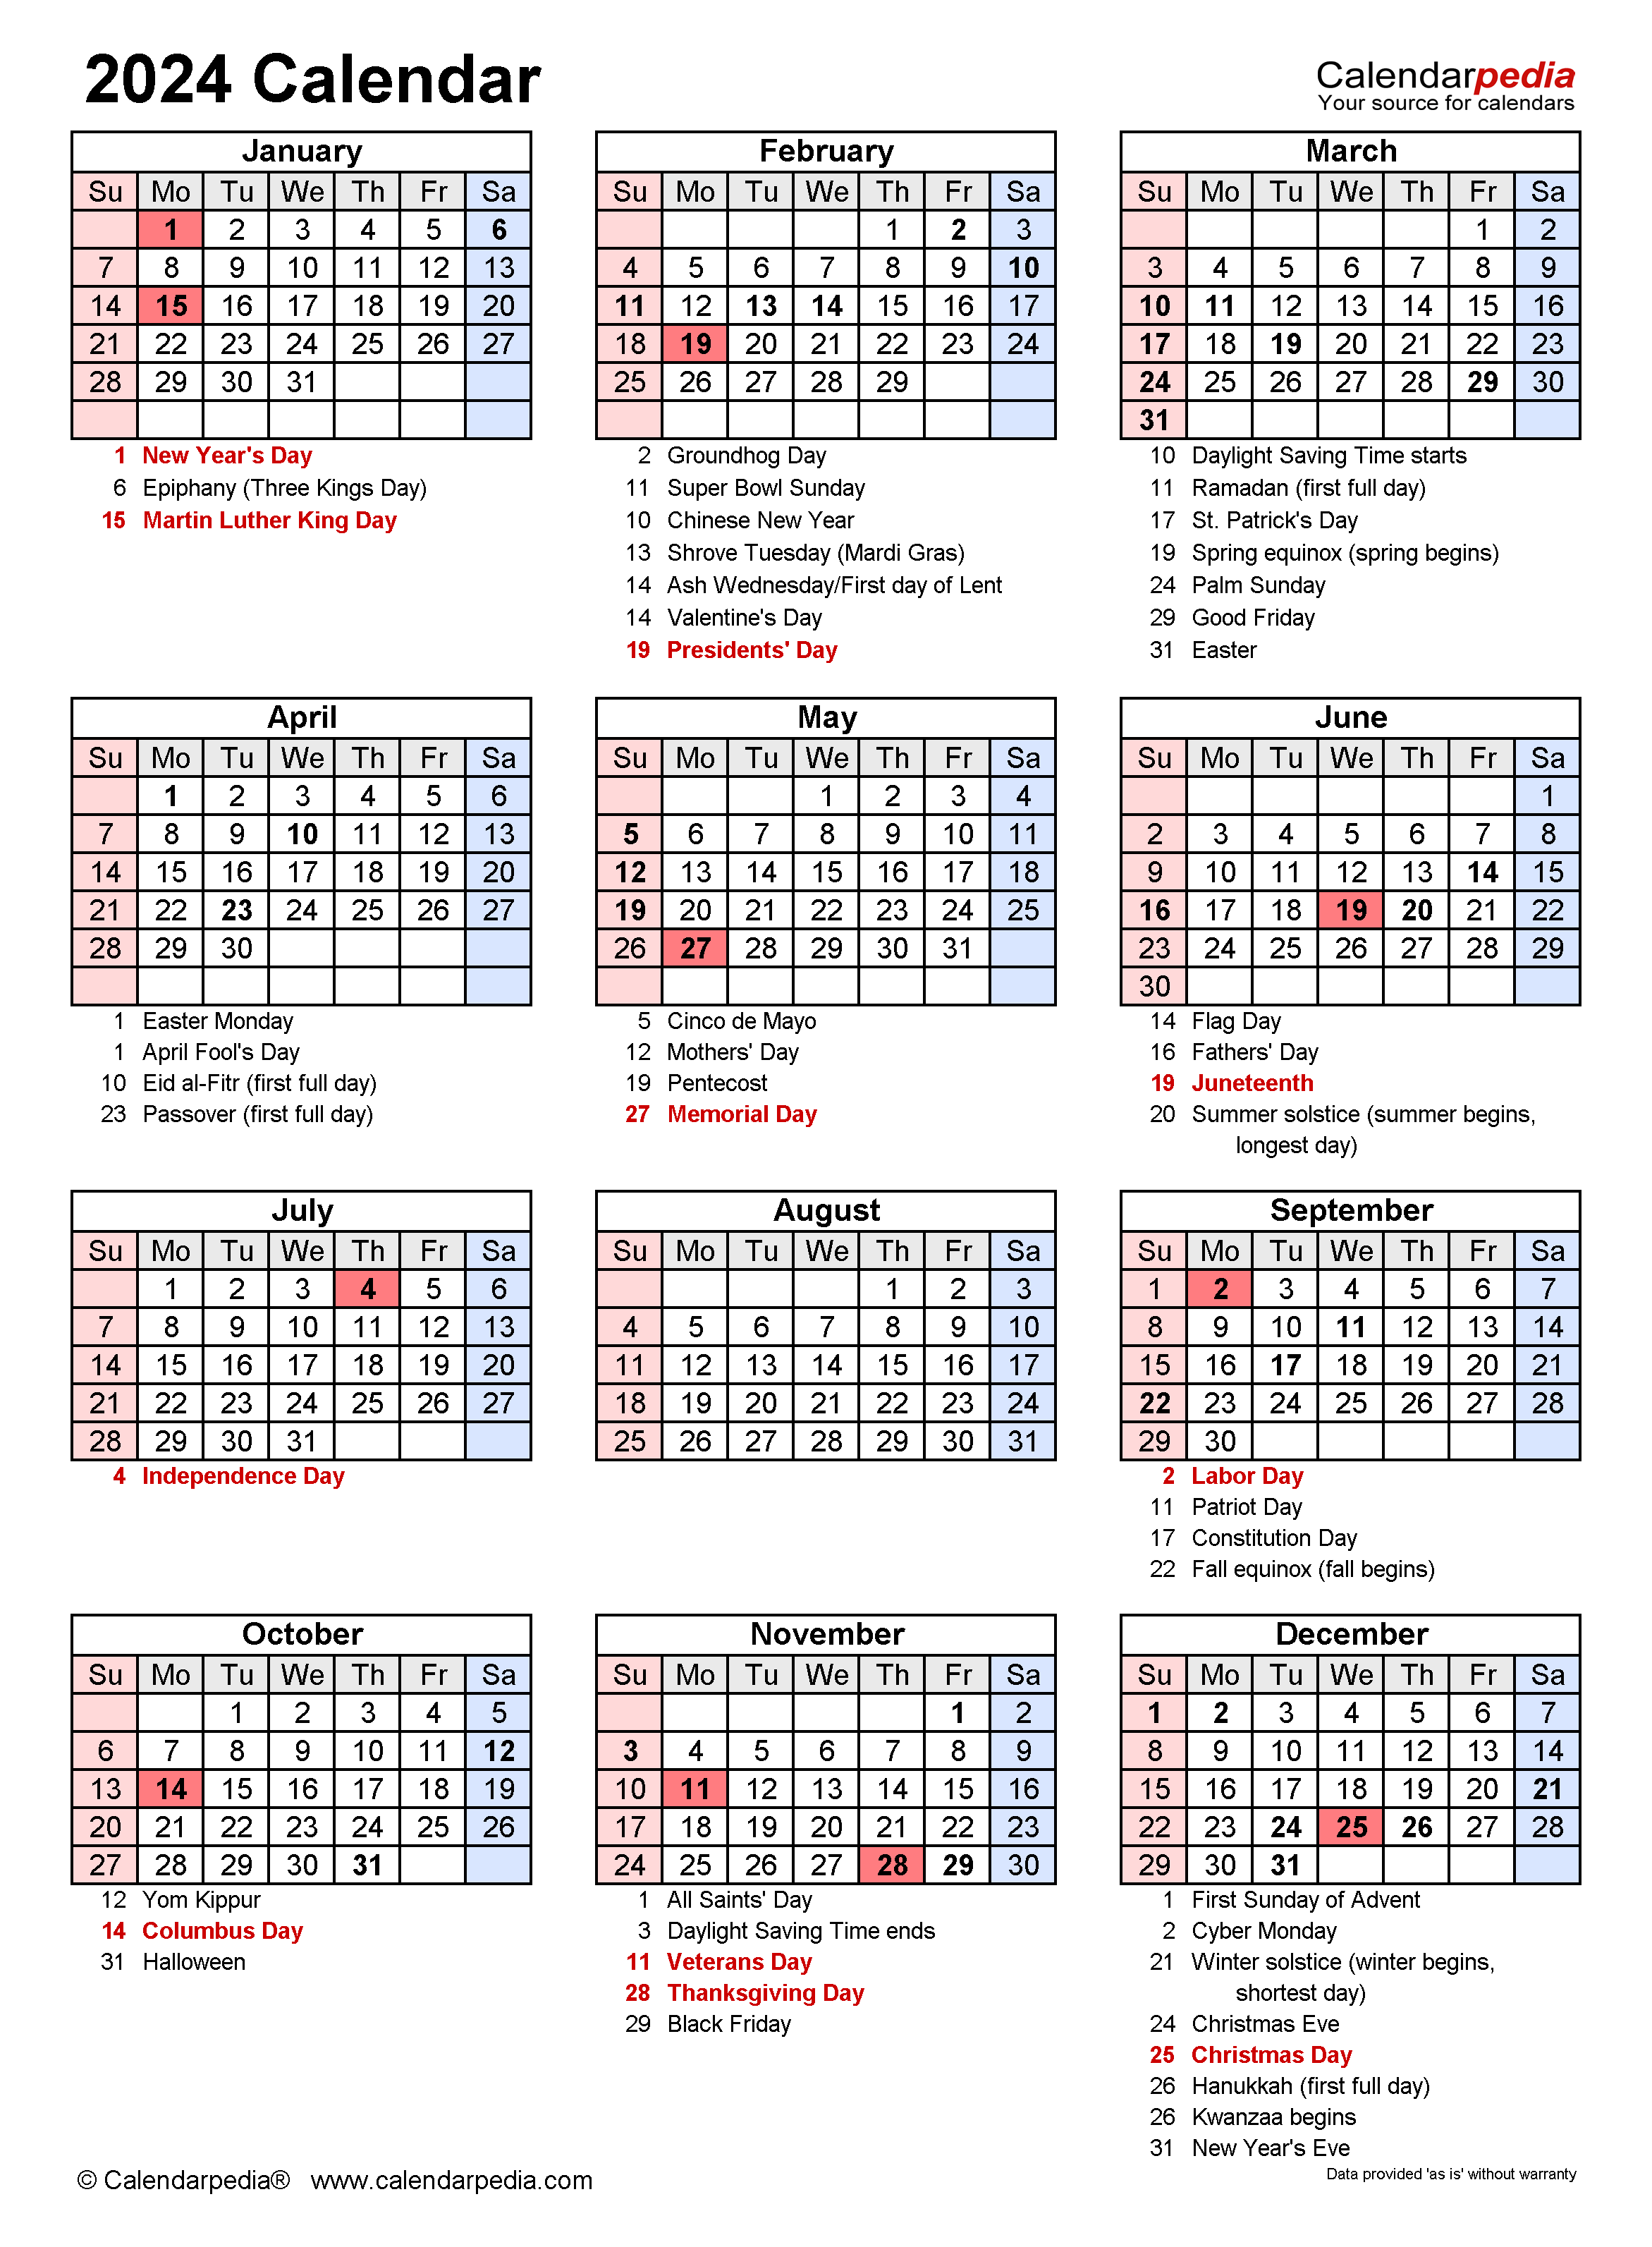 2024 Printable Calendar With Holidays AriaATR Photos - Free Printable 2024 Calendar With Holidays And Observances